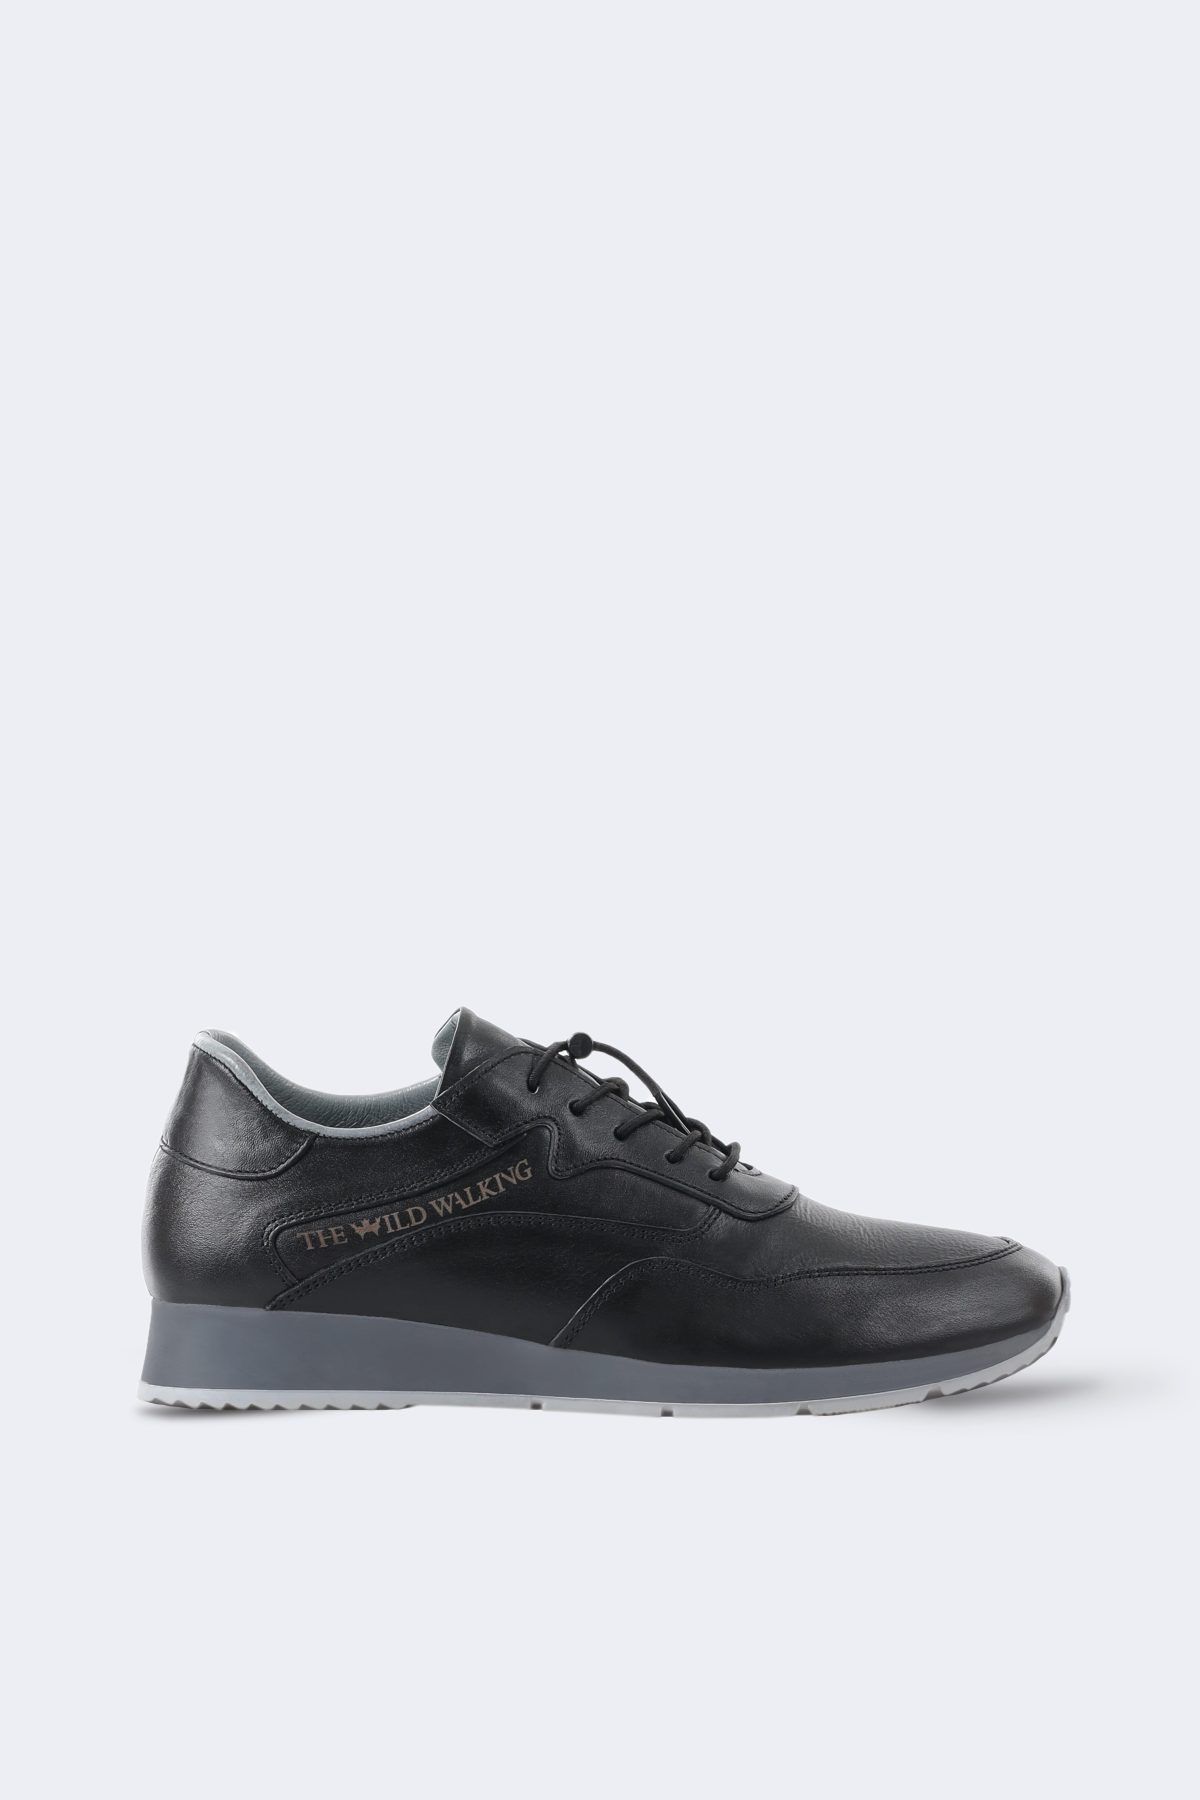 Thewildwalking leather sneakers – Black-0